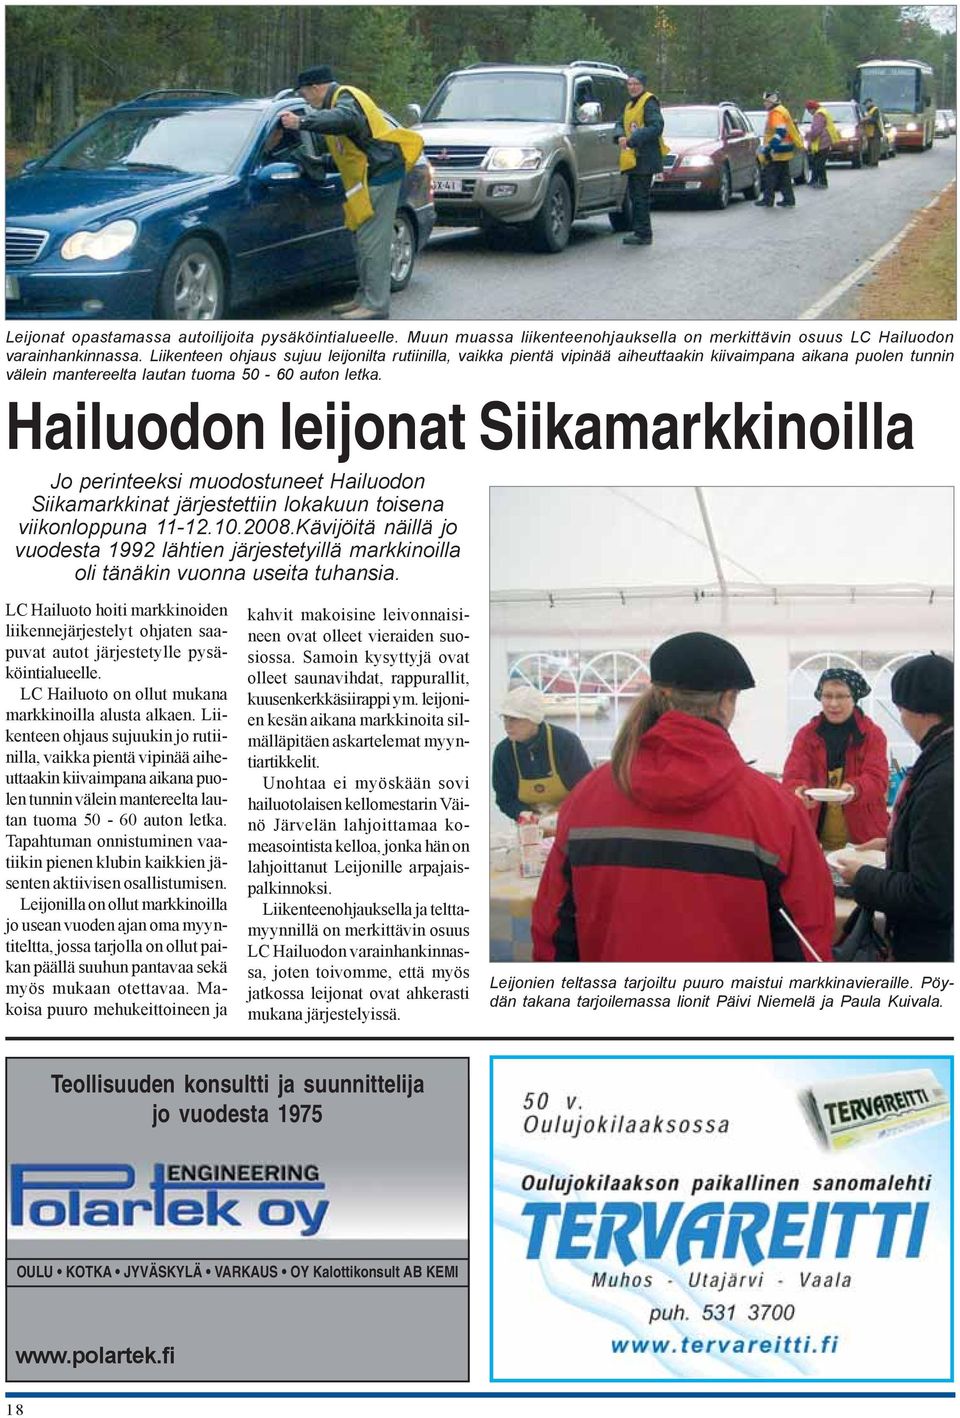 Hailuodon leijonat Siikamarkkinoilla Jo perinteeksi muodostuneet Hailuodon Siikamarkkinat järjestettiin lokakuun toisena viikonloppuna 11-12.10.2008.